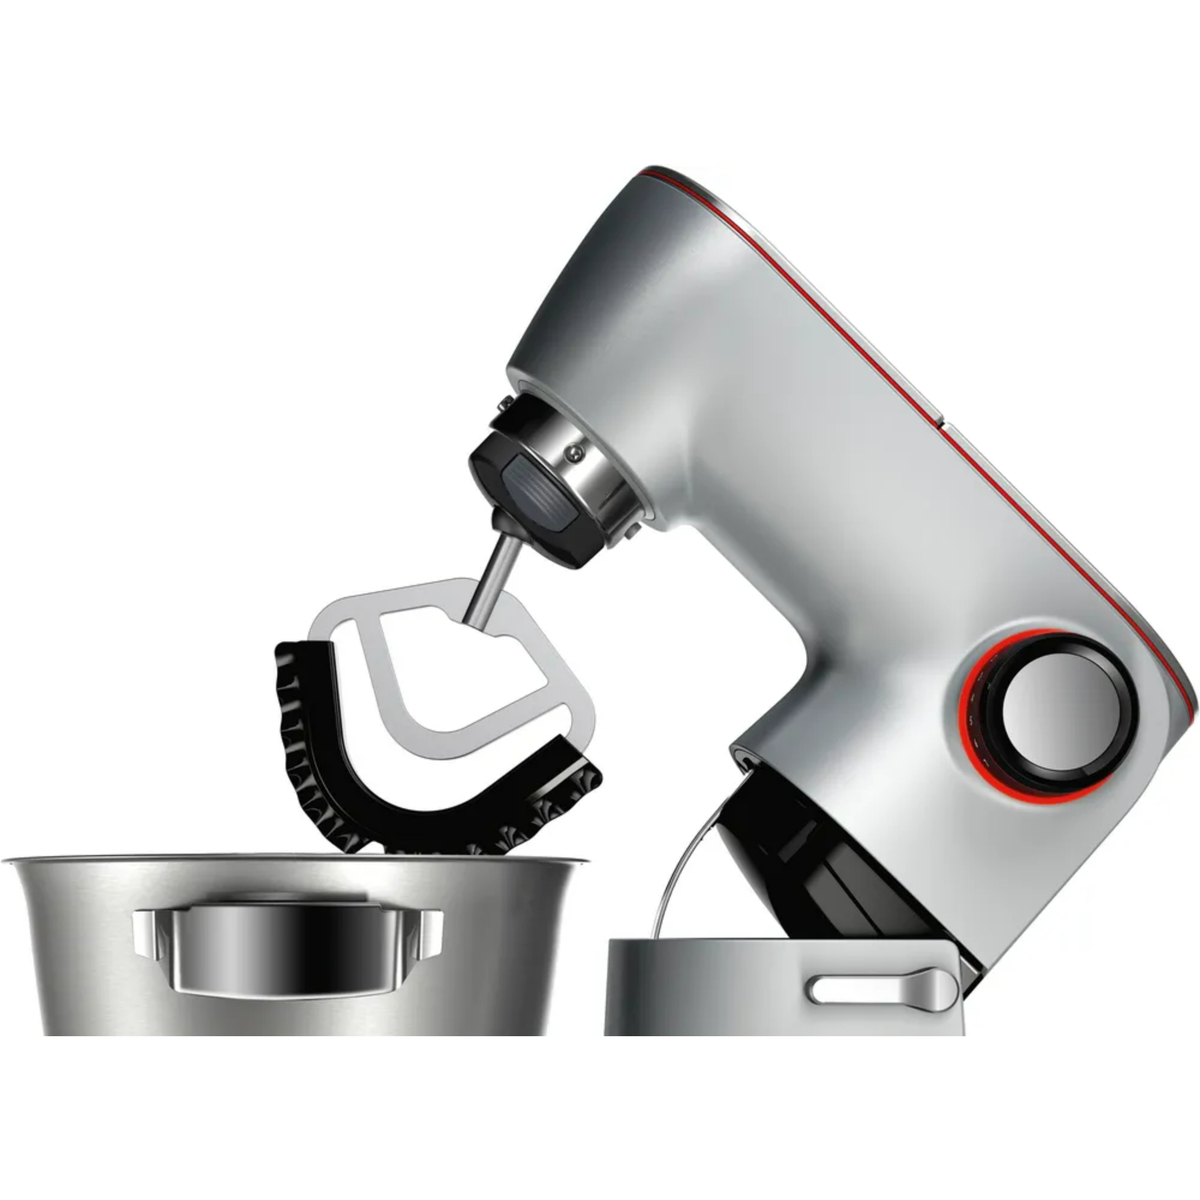 Bosch Series 8 Kitchen Machine with scale, 1600W, Silver/Black, MUM9GX5S21